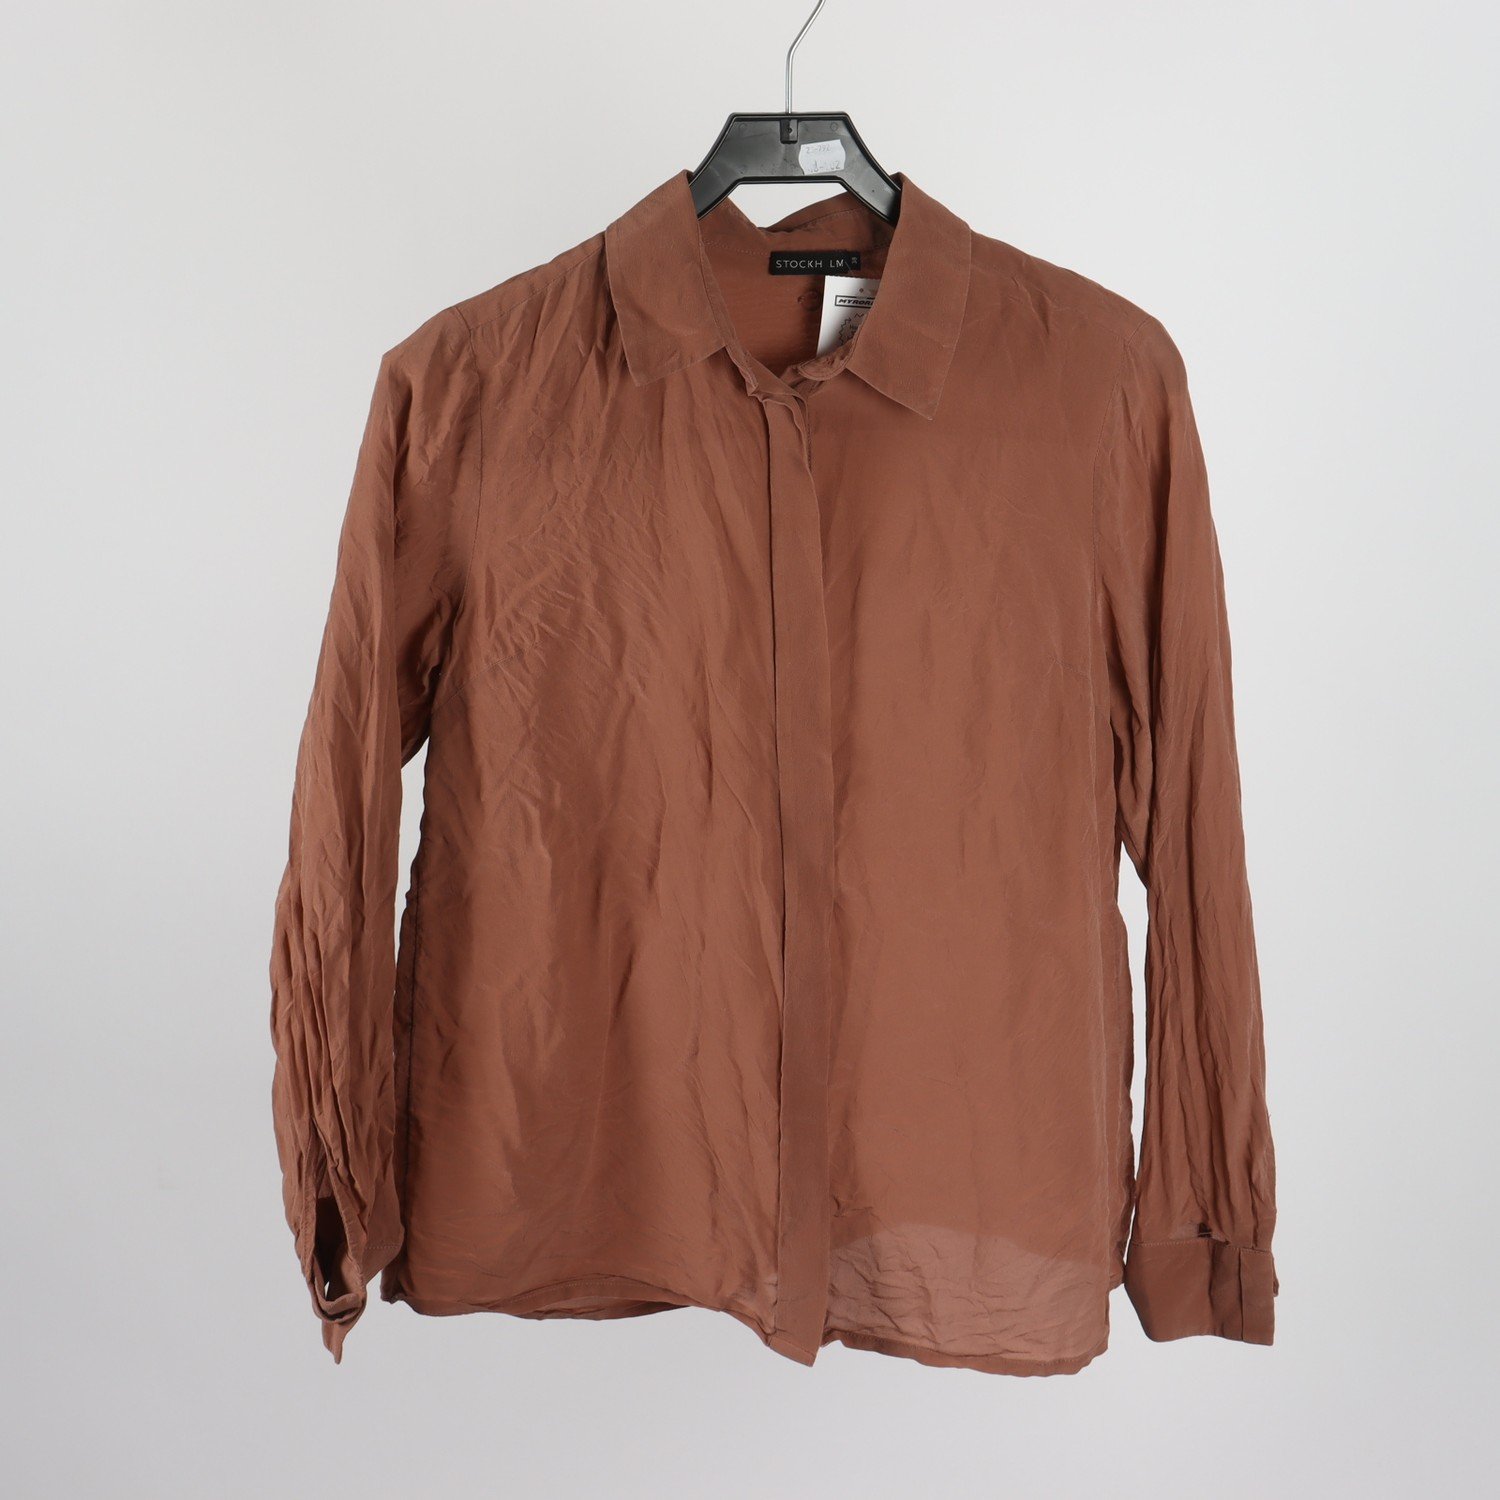 Skjorta, Stock LM, silk, brun, stl.38